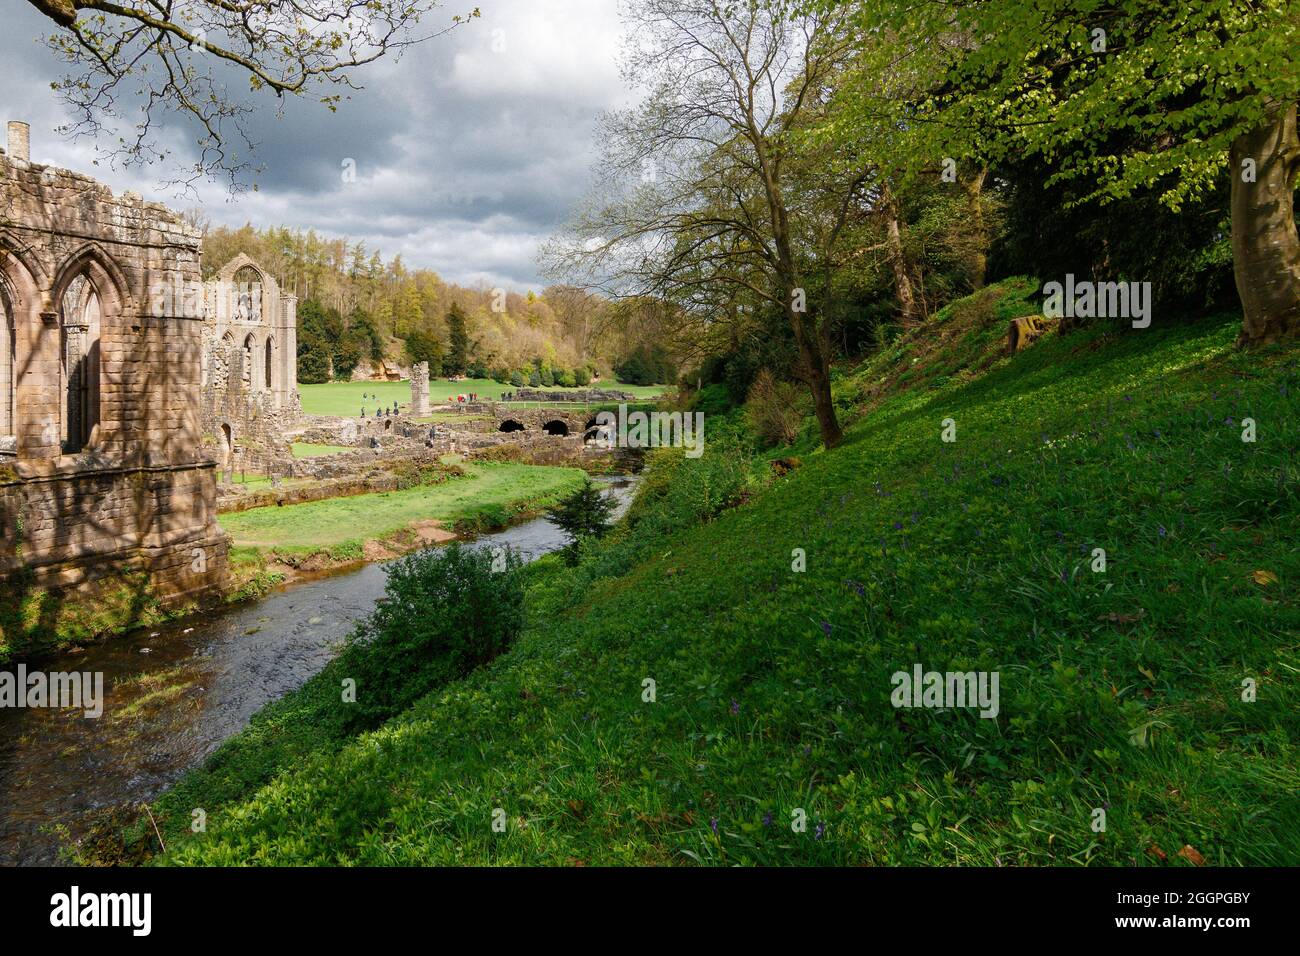 Abfallender Hügel mit Wald und grünem Laub mit der River Skell and Fountains Abbey, Ripon, North Yorkshire, England, Großbritannien. Stockfoto